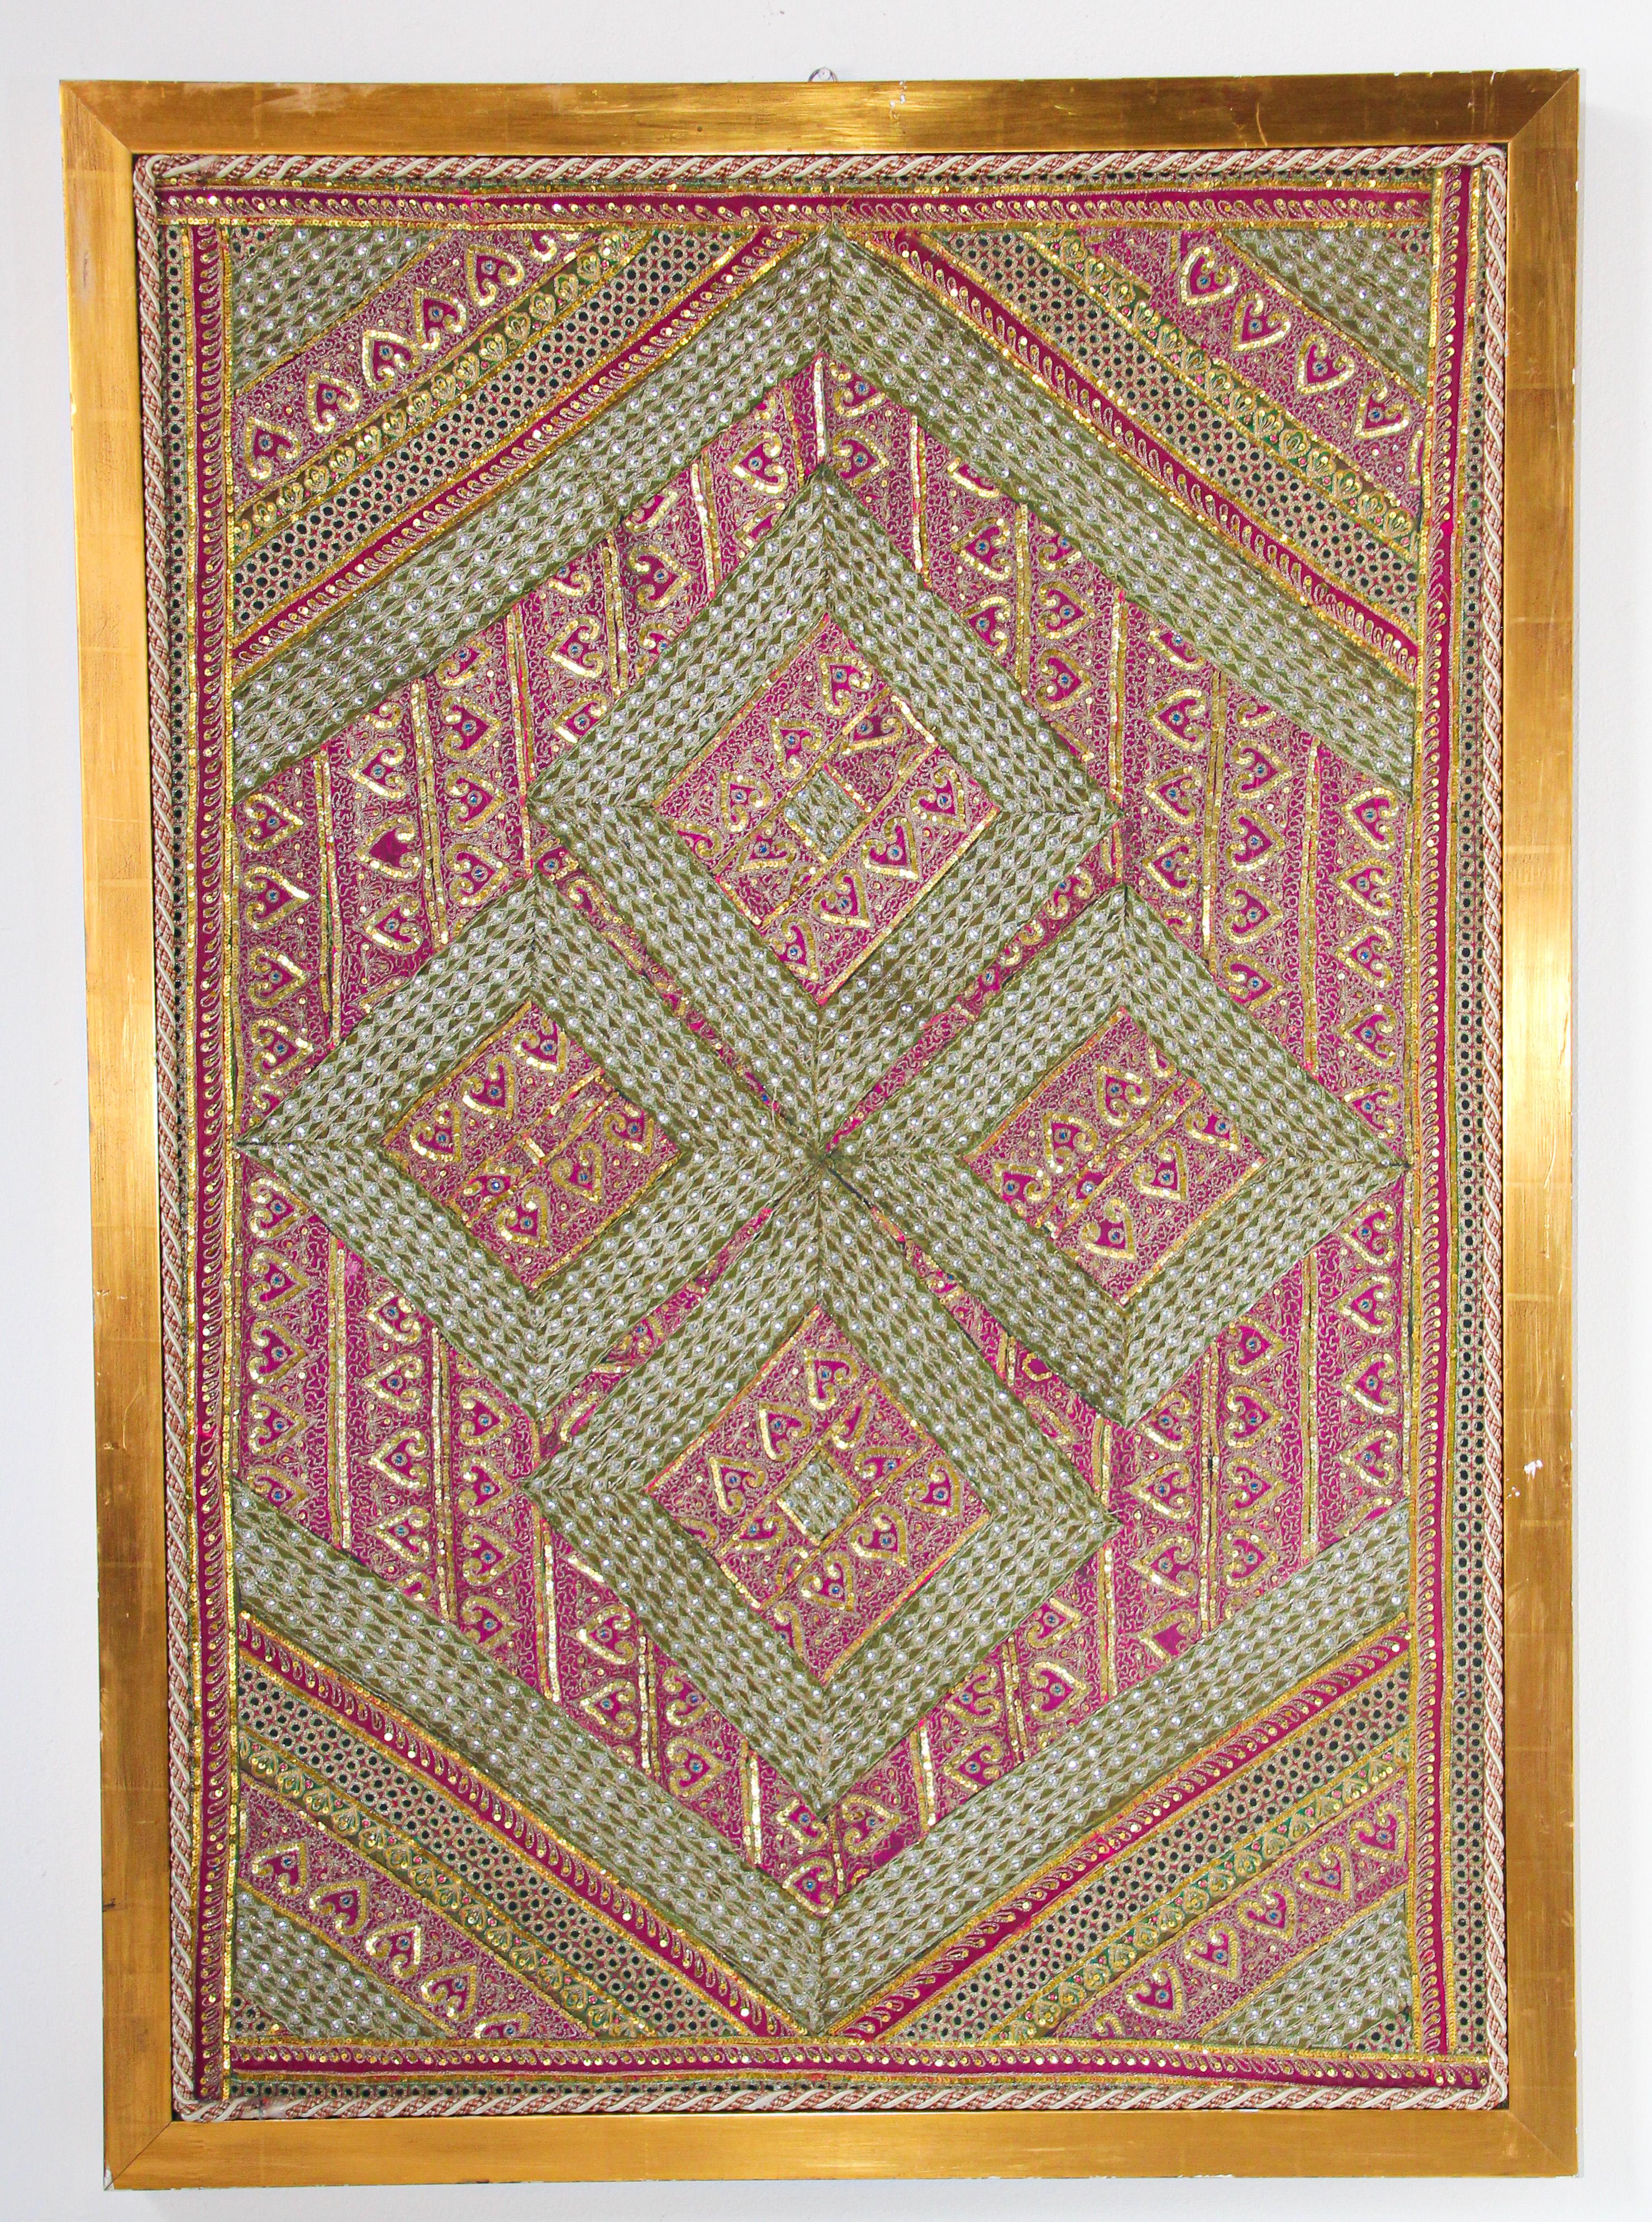 Grand textile brodé et matelassé à la main, originaire du nord de l'Inde.
Cadre de tapisserie de style moghol en soie et fils de métal du Rajasthan (Inde)
Un design fantaisiste d'art populaire asiatique dans ce patchwork distinctif avec un